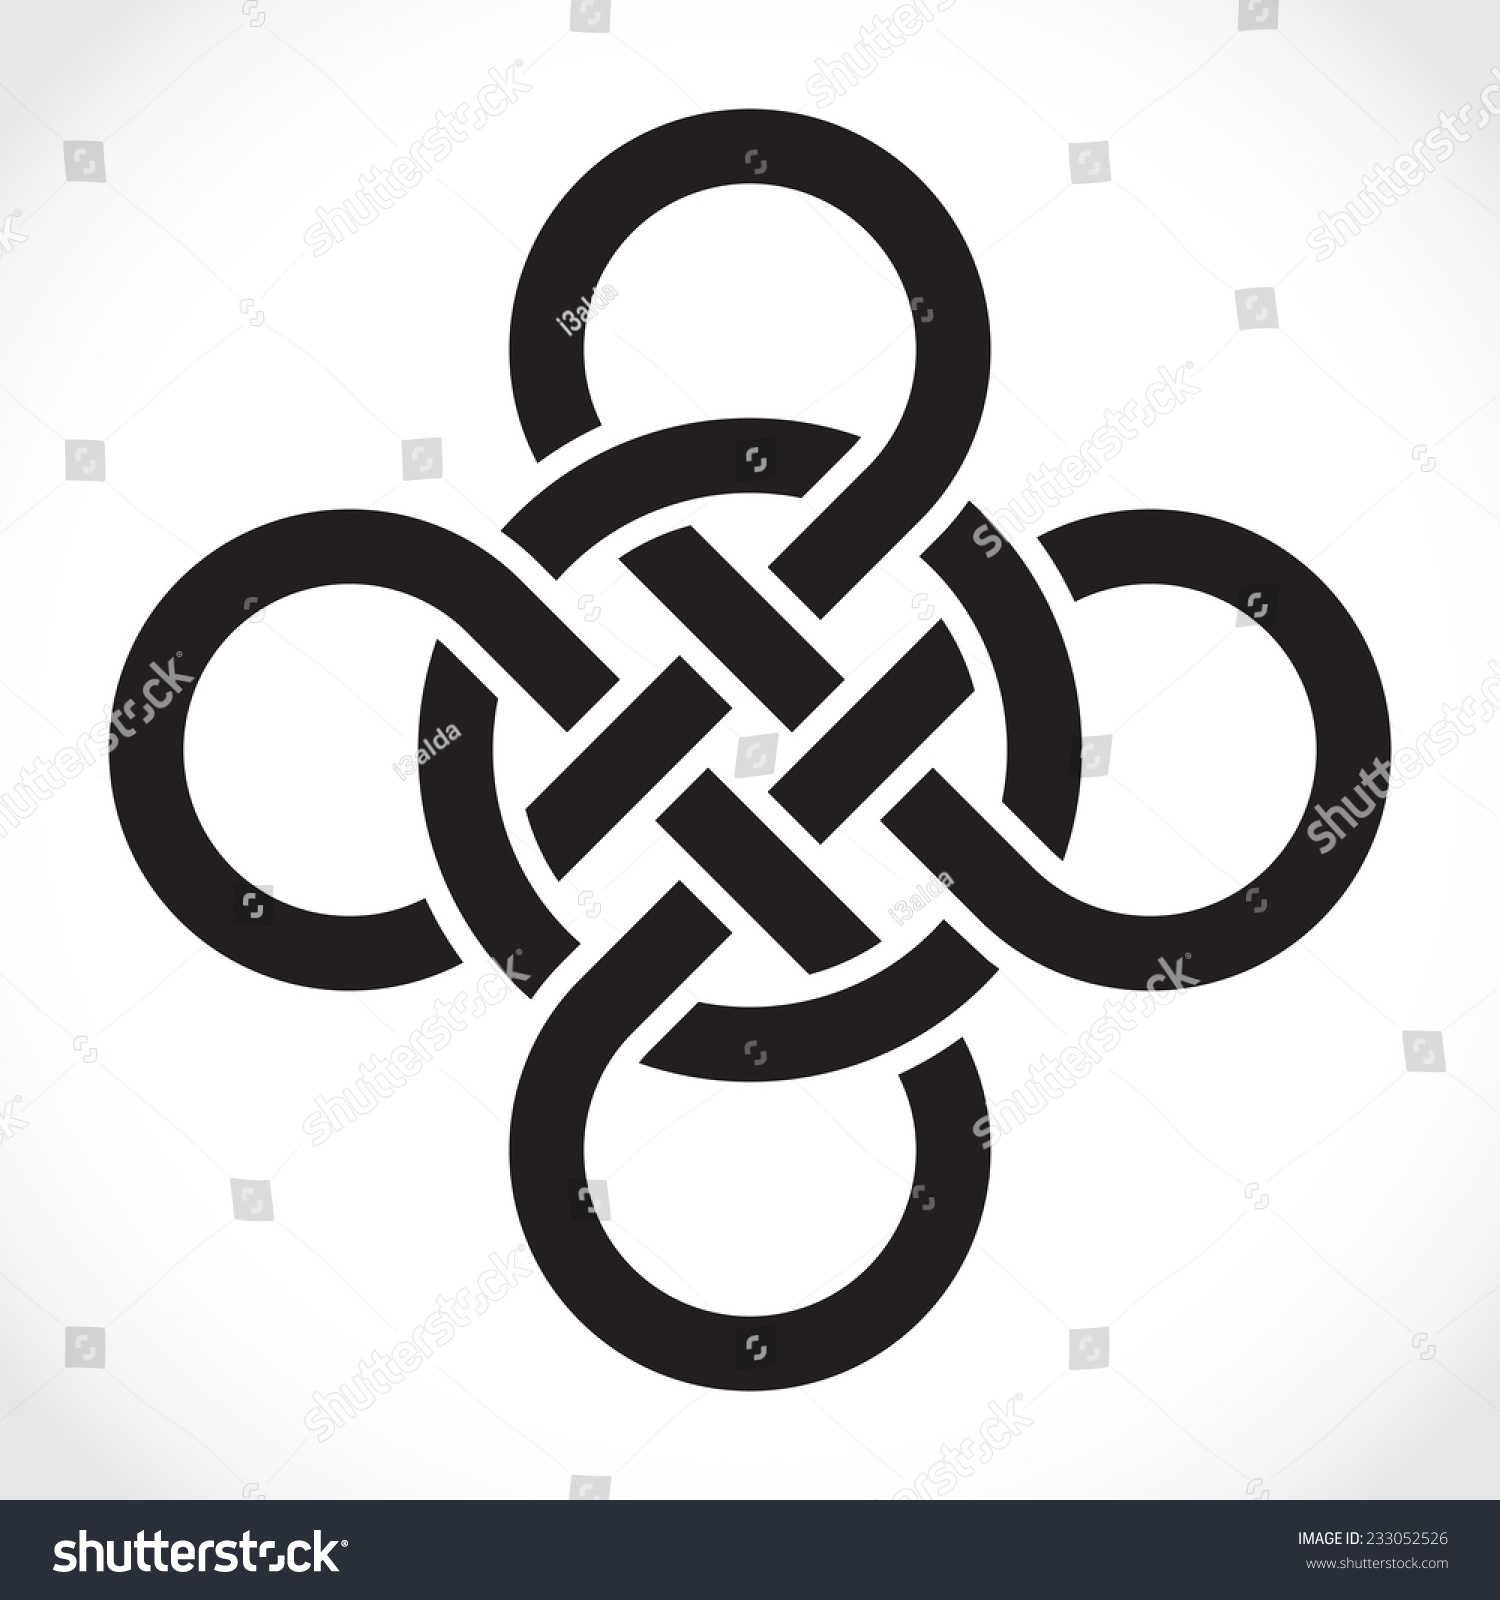 Celtic Symbol Illustration Stock Vector 233052526 - Shutterstock